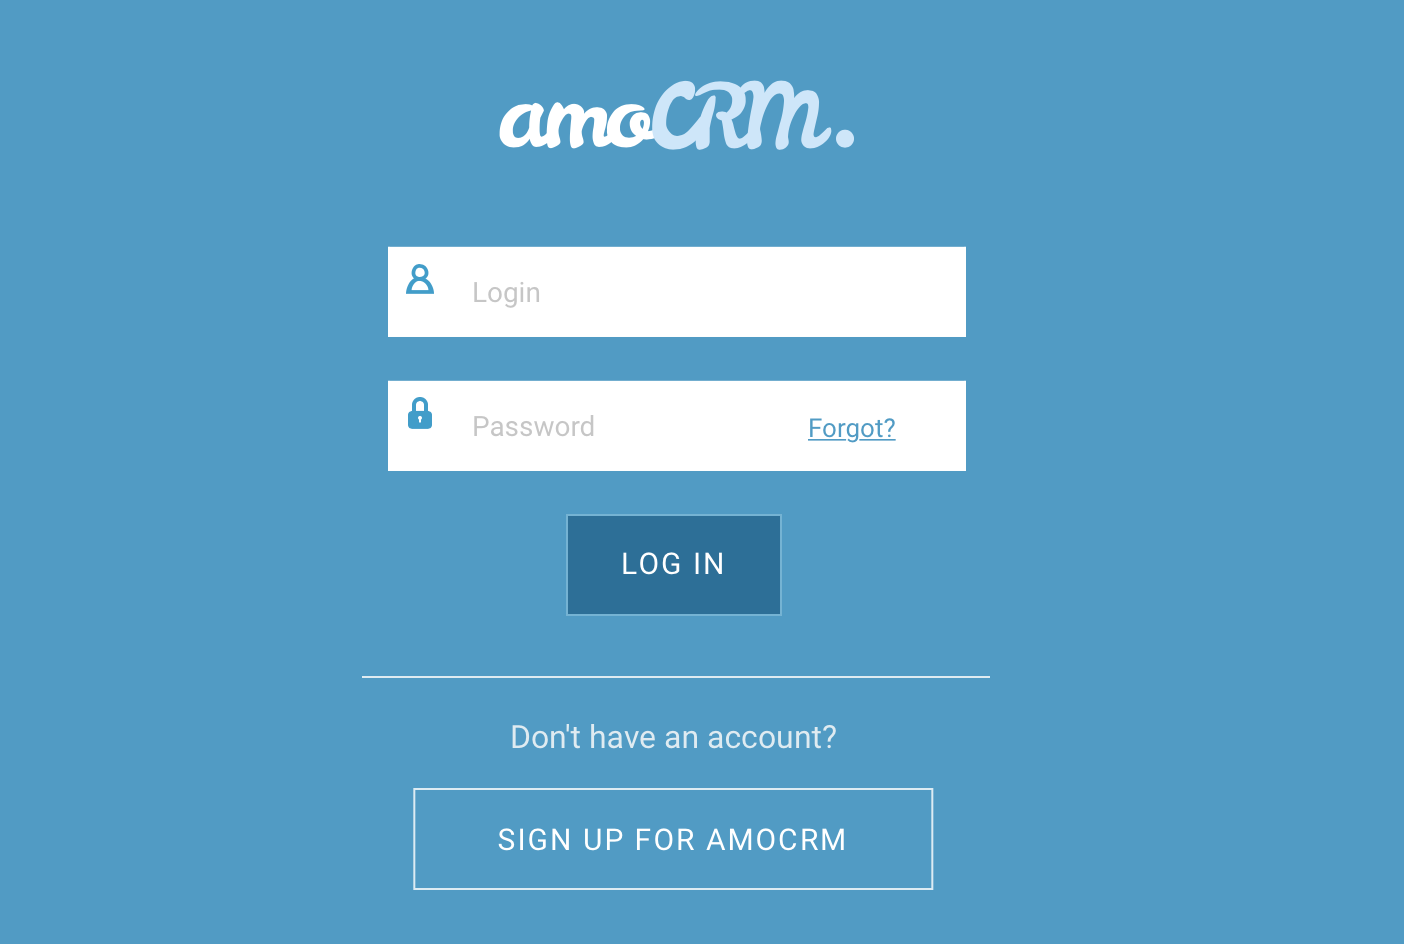 Залогиньтесь в amoCRM – введите ваш логин и пароль. Нажмите кнопку «Log in»